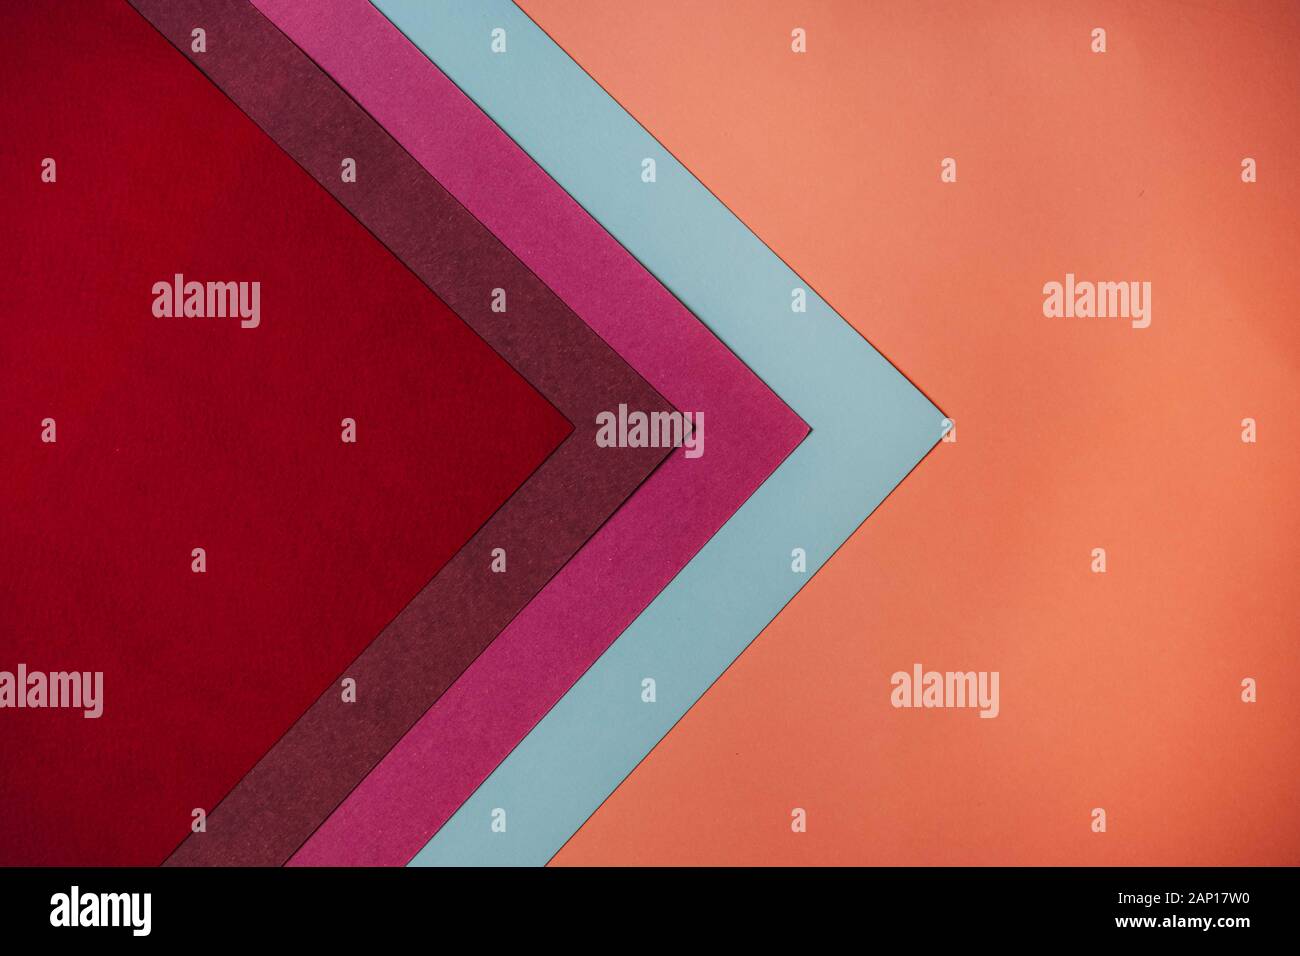 Geométrica abstracta de papel colorido telón de fondo. El concepto de bloque de color. Foto de stock